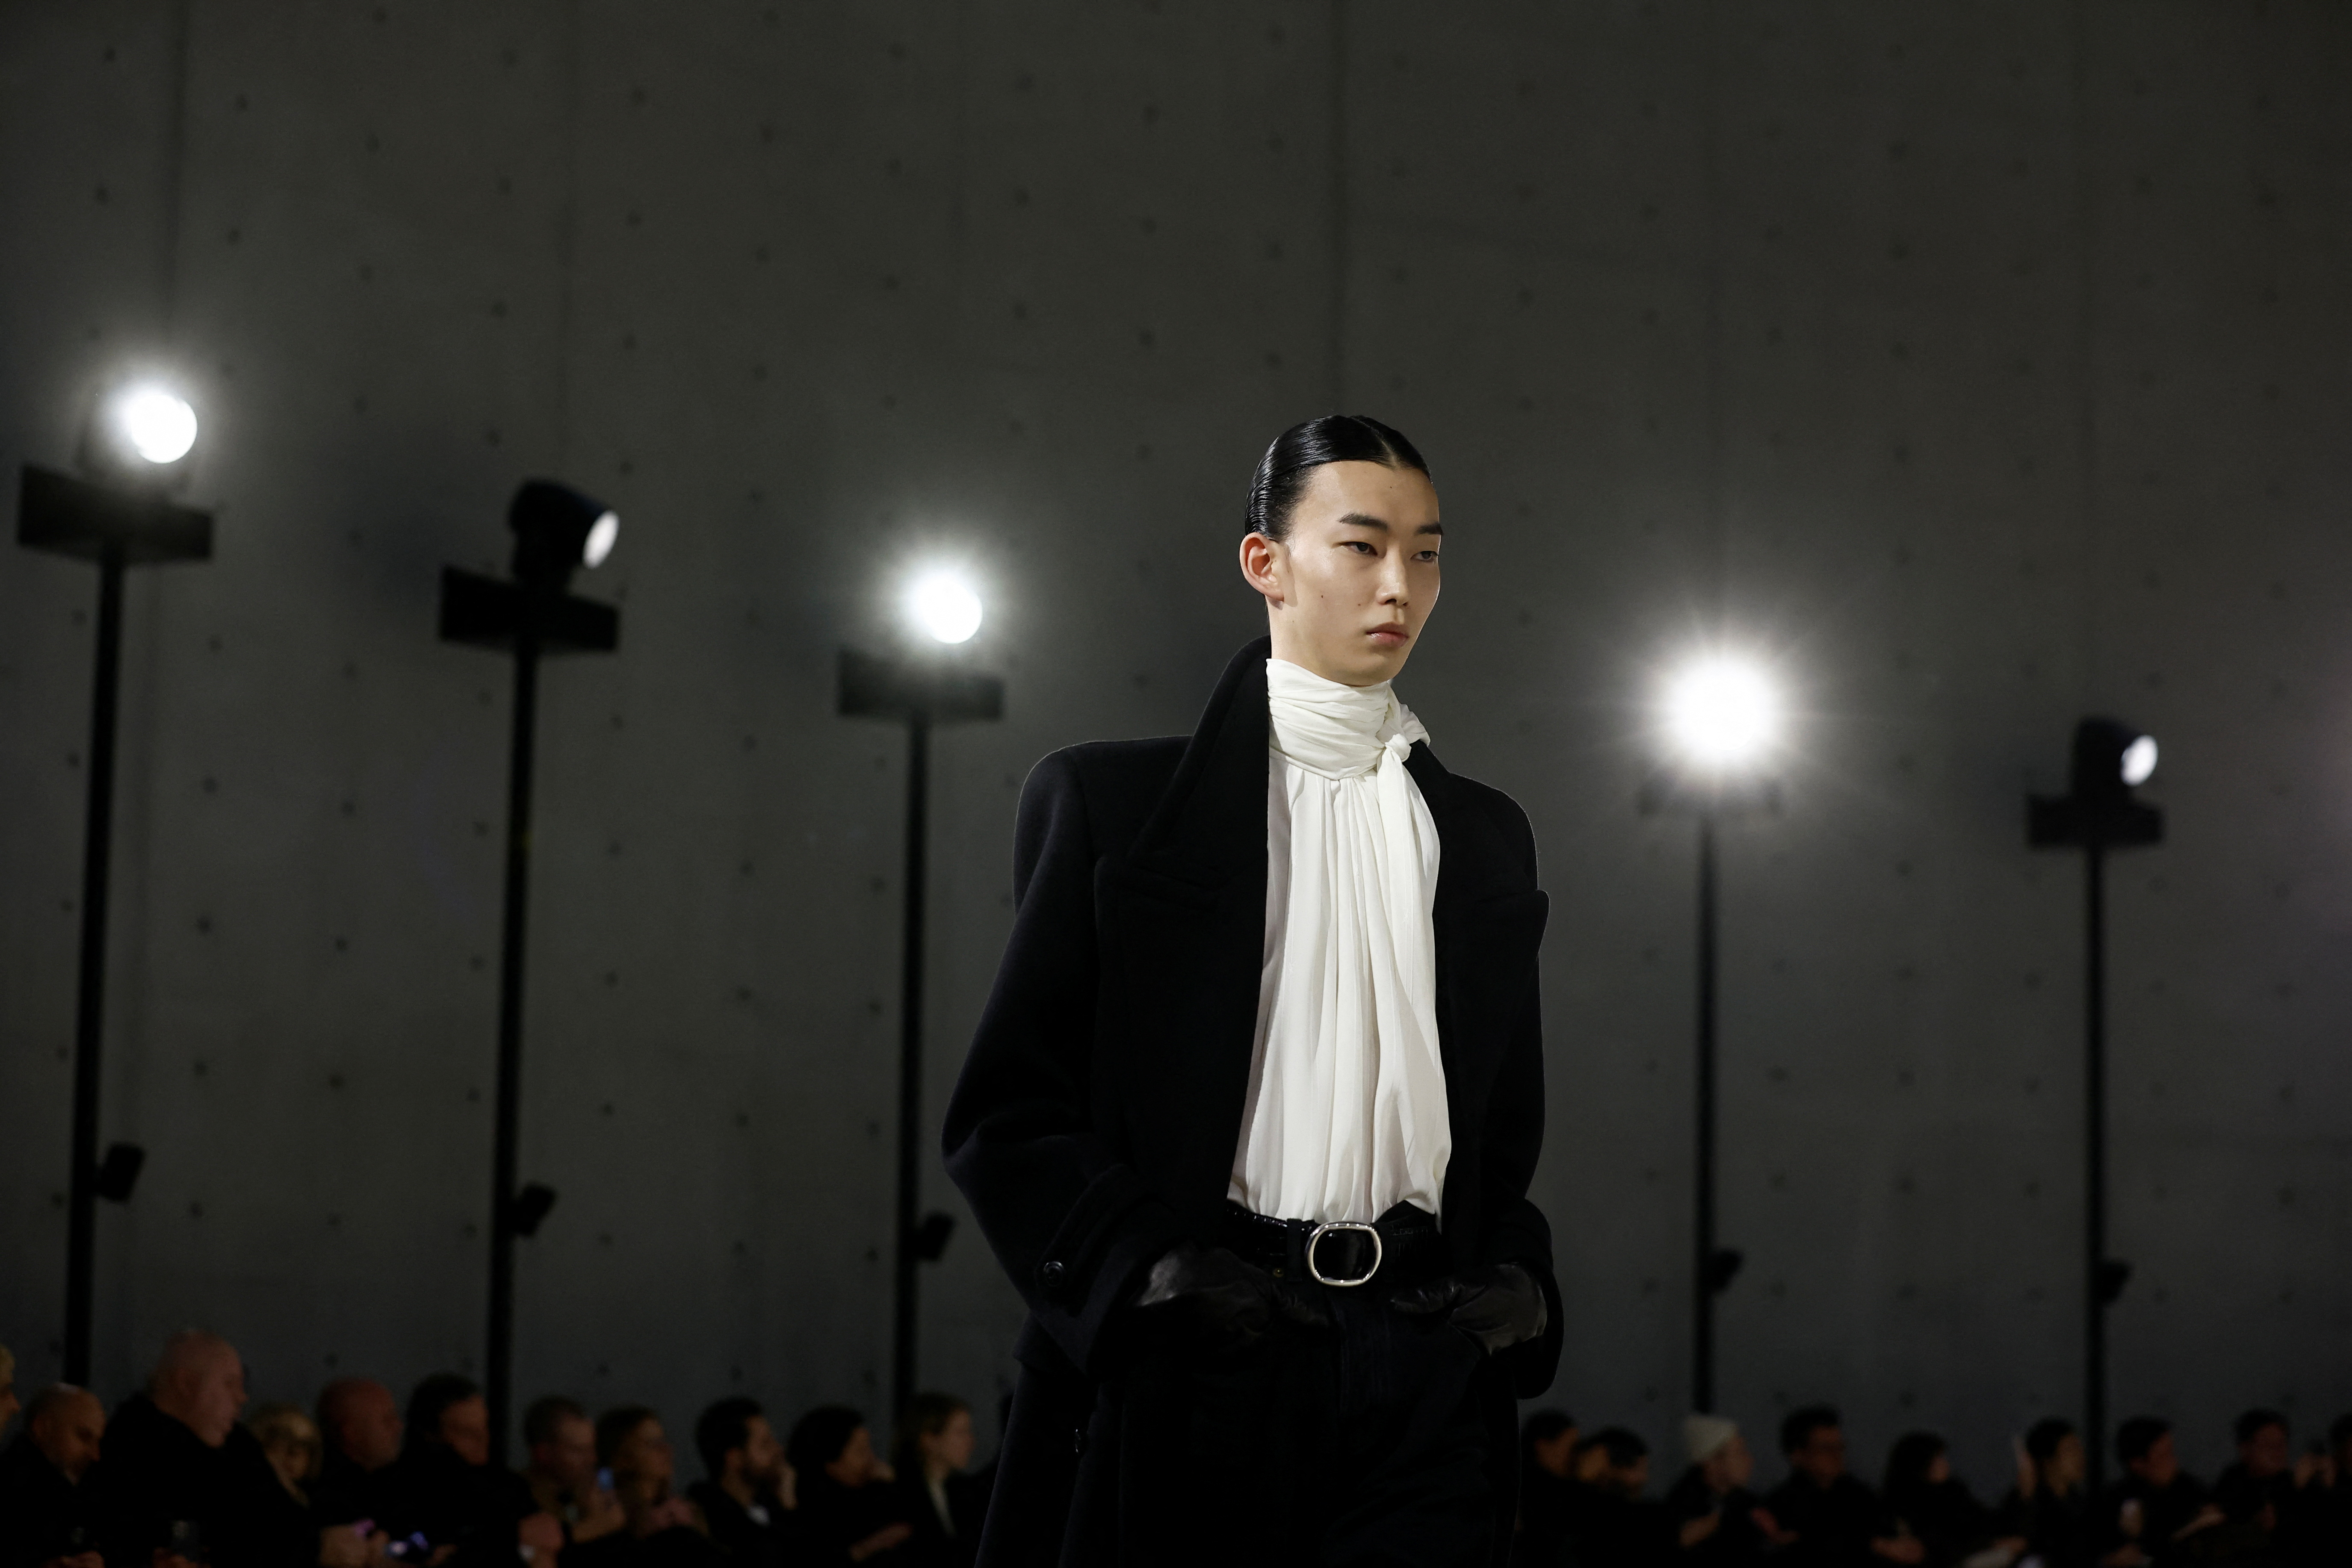 Saint Laurent Paris  Most stylish men, Mens fashion edgy